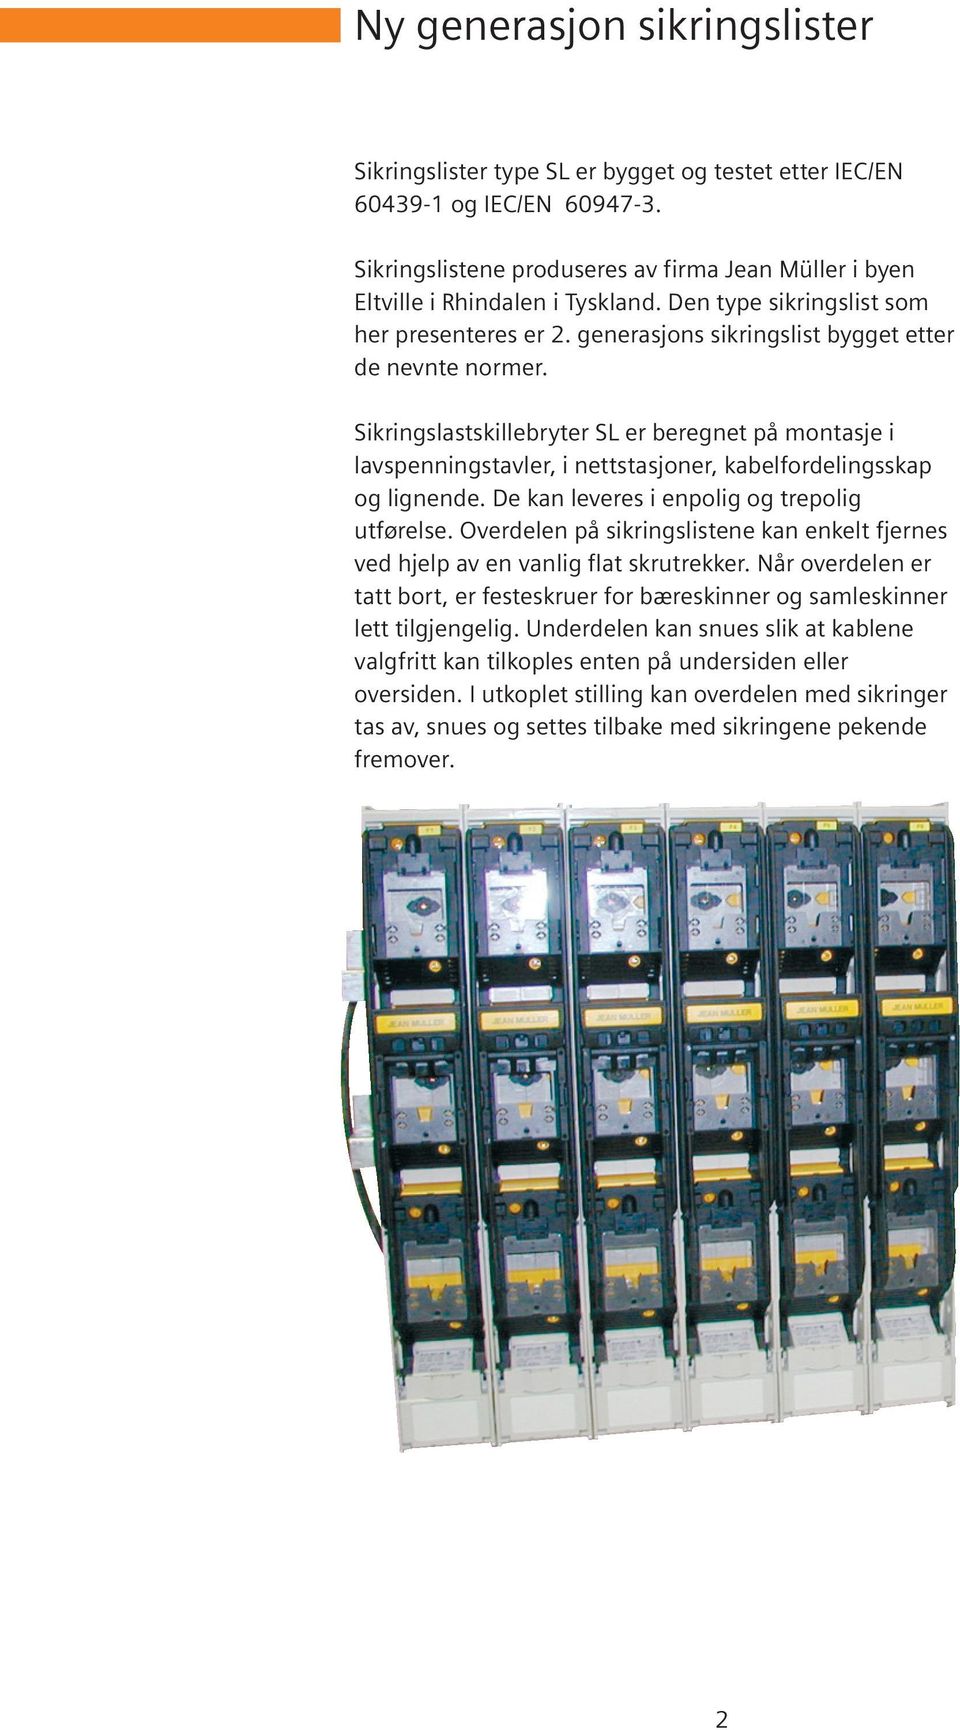 Sikringslastskillebryter SL er beregnet på montasje i lavspenningstavler, i nettstasjoner, kabelfordelingsskap og lignende. De kan leveres i enpolig og trepolig utførelse.